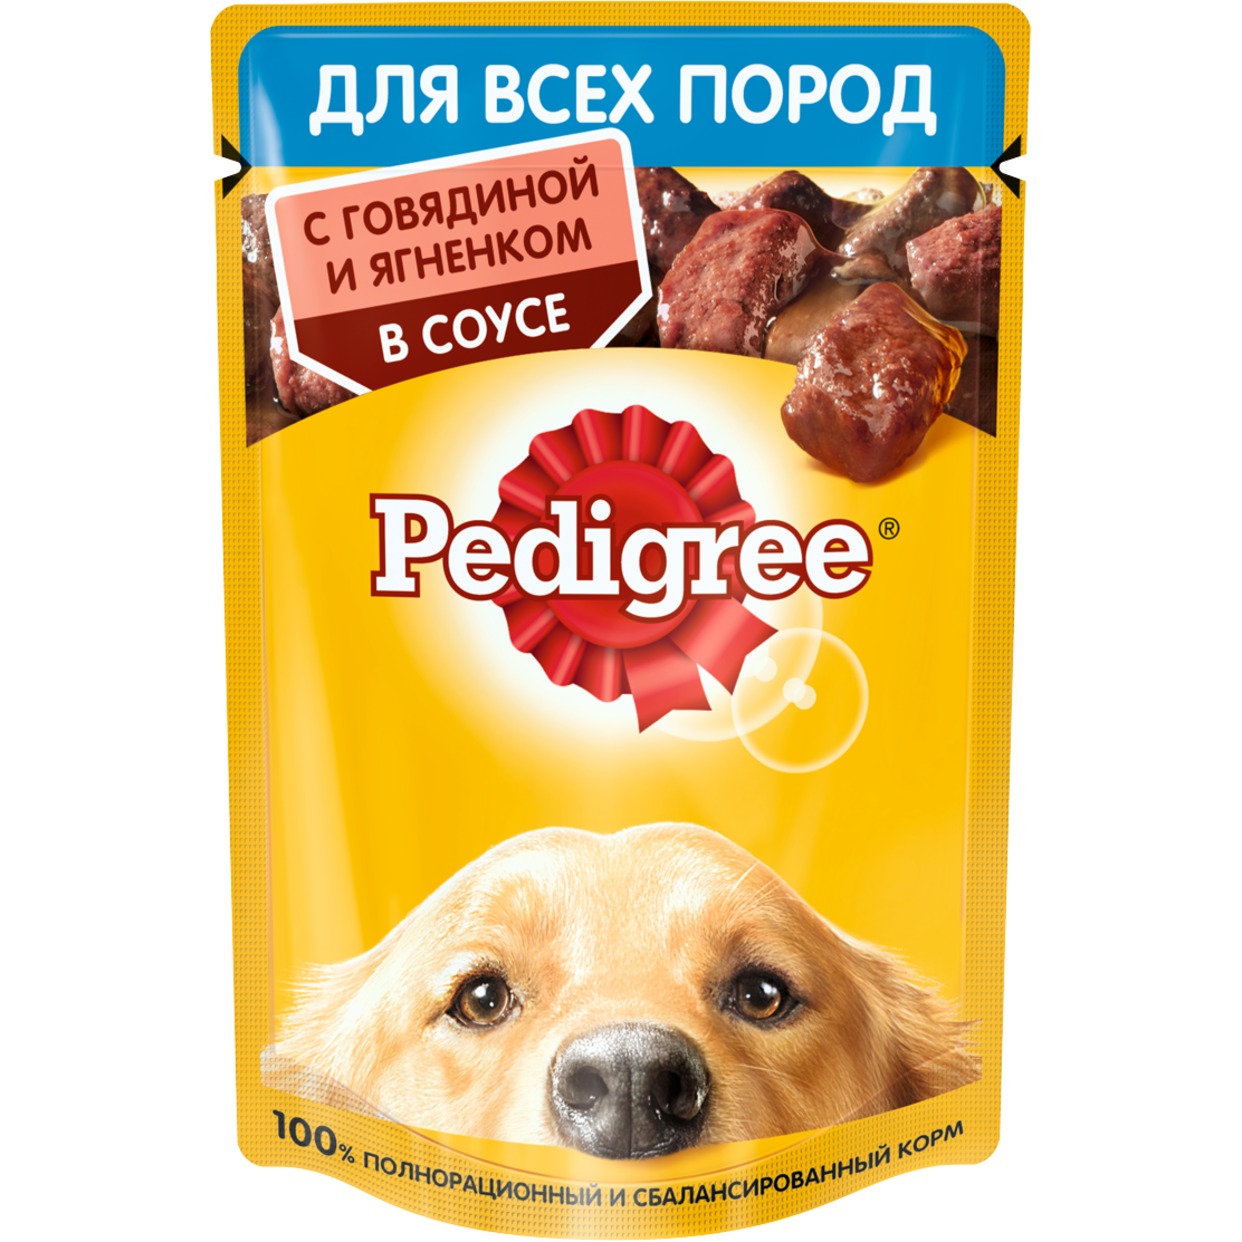 Корм консервированный полнорационный Pedigree для взрослых собак всех пород с говядиной и ягненком в соусе, 85г по акции в Пятерочке